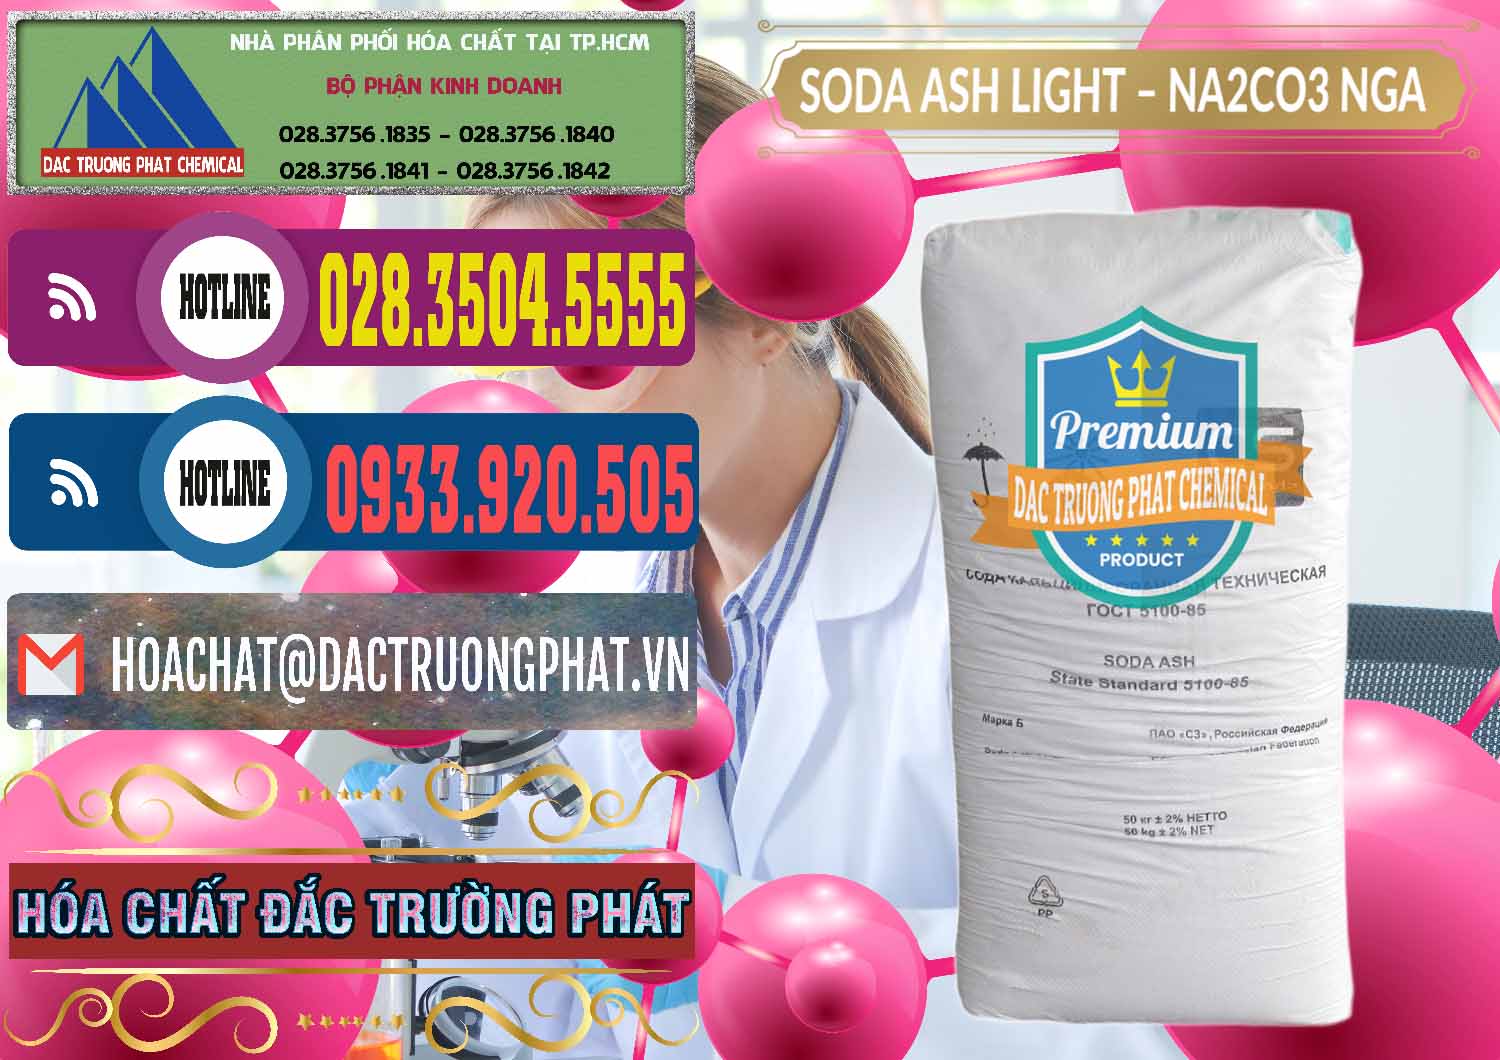 Cty phân phối và bán Soda Ash Light - NA2CO3 Nga Russia - 0128 - Cty chuyên cung cấp - kinh doanh hóa chất tại TP.HCM - muabanhoachat.com.vn